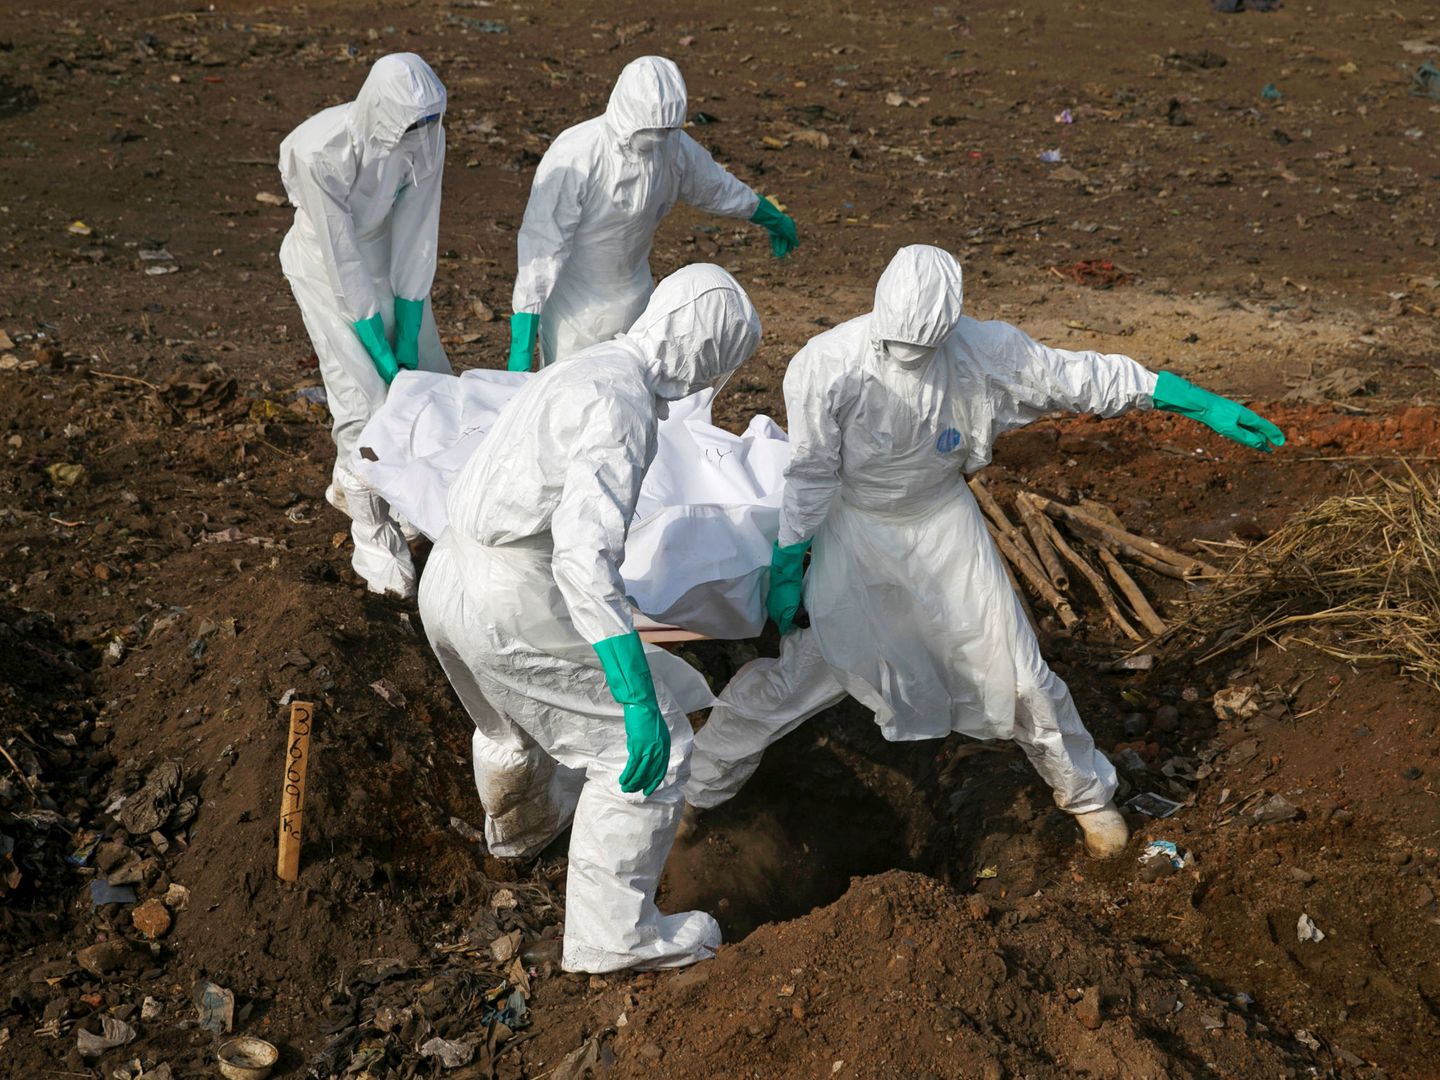 Trabajadores especializados transportan el cadáver de una supuesta víctima de ébola en Freetown, Sierra Leona, durante el brote de diciembre de 2014. (Reuters)